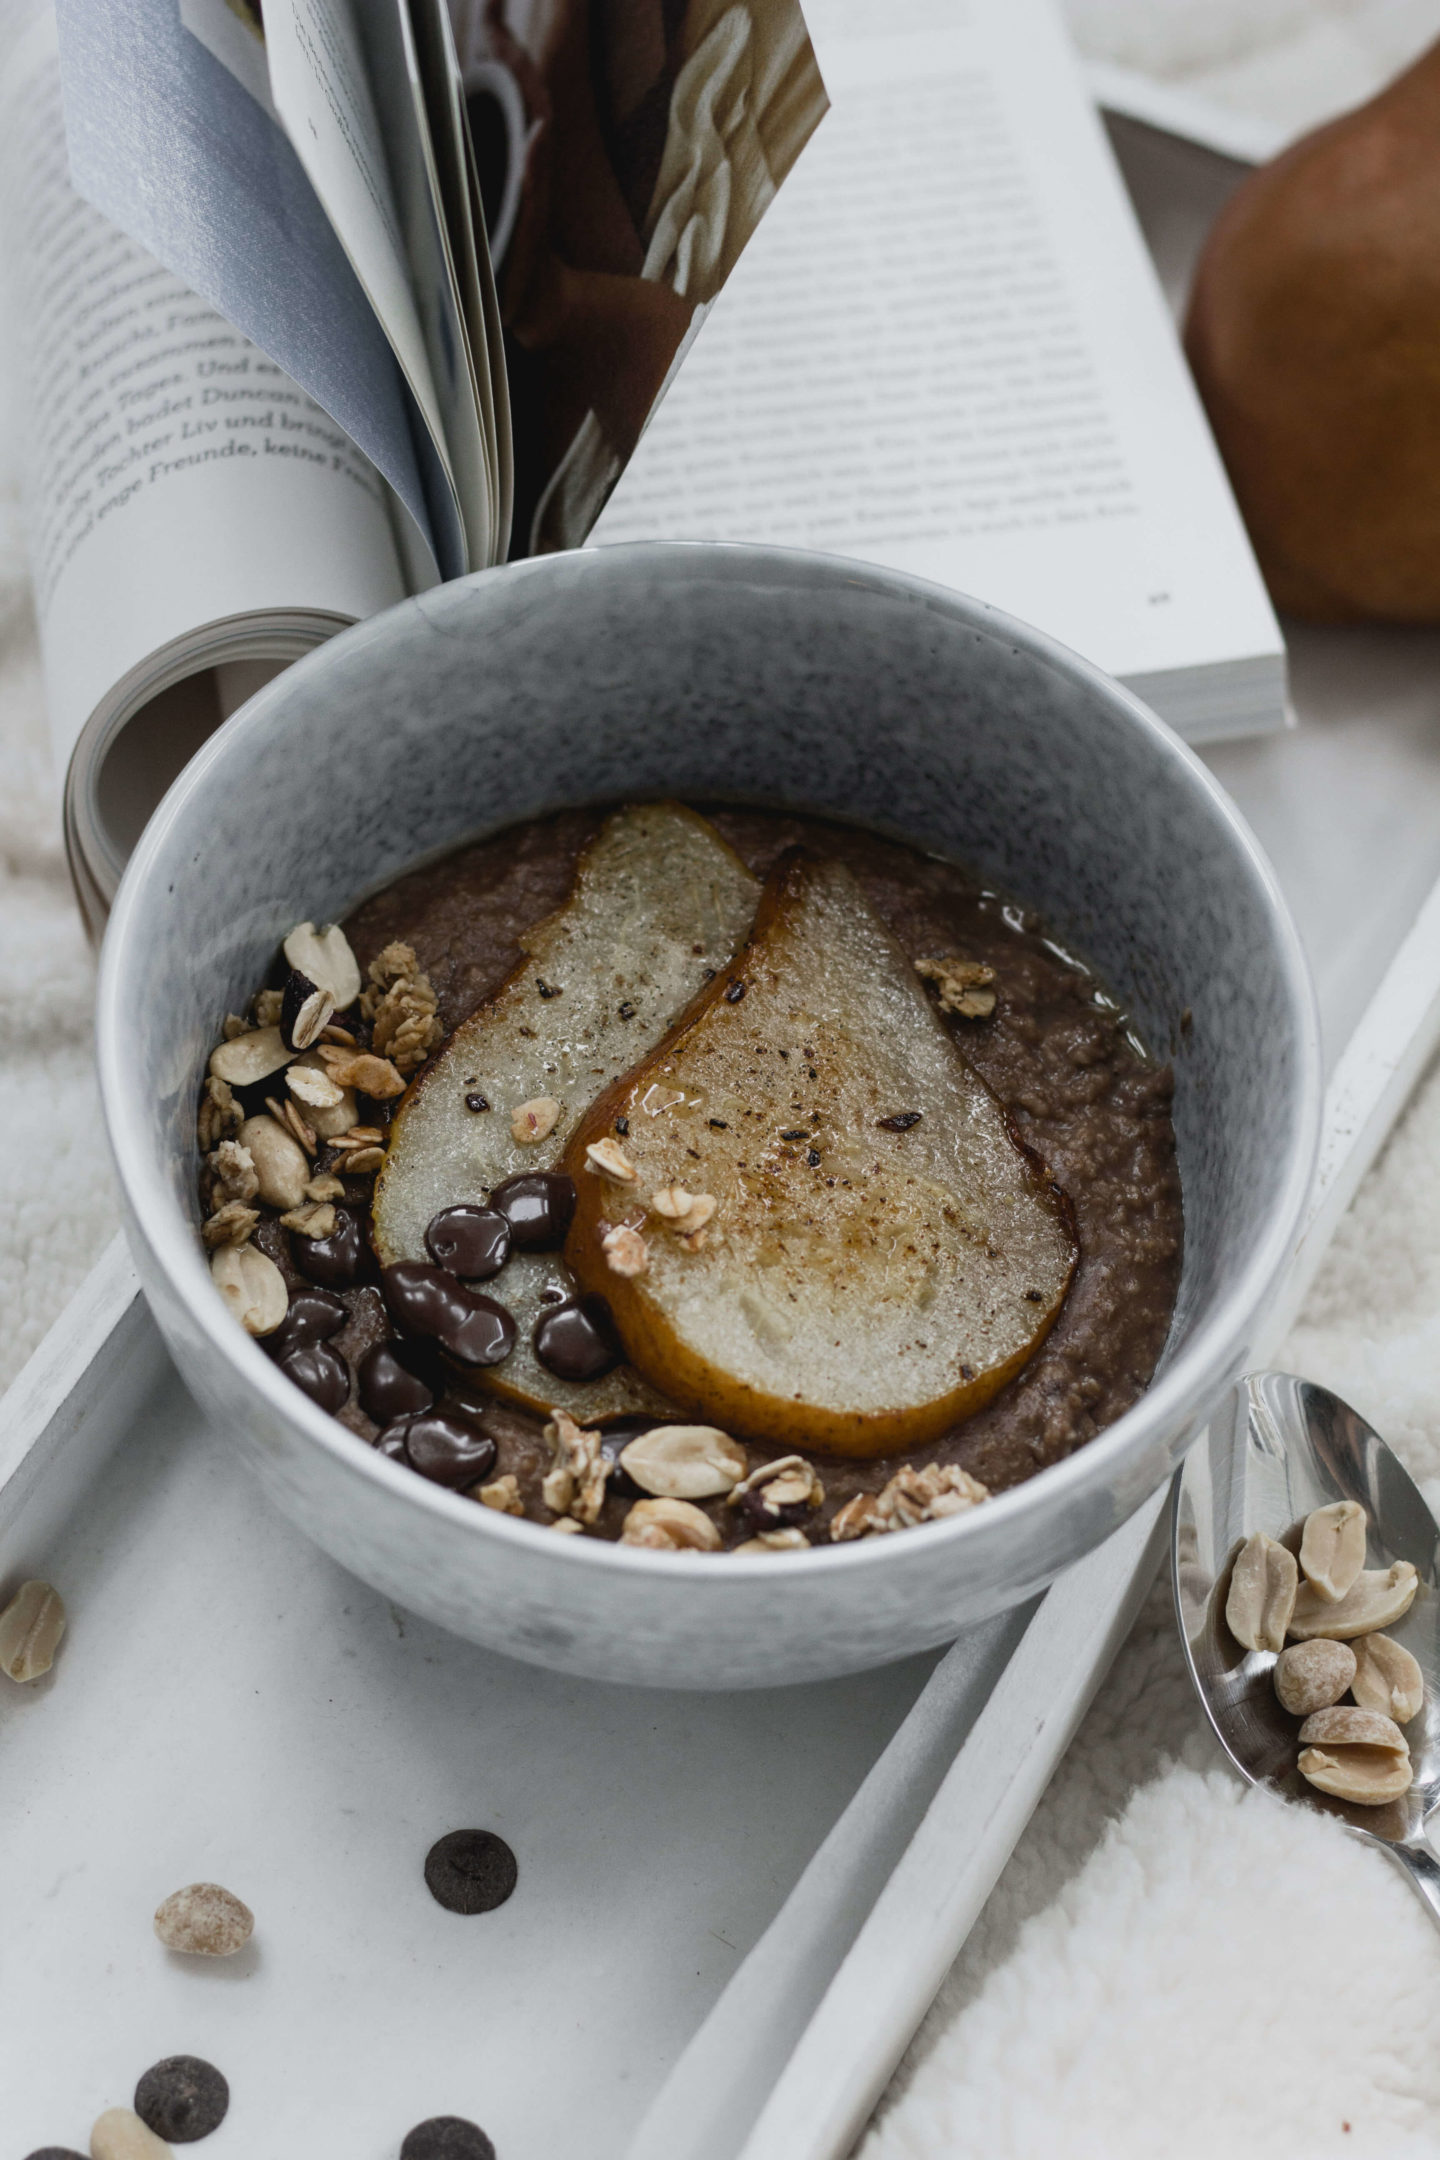 Schokoladen Hirsebrei mit Birne-Soulfood- Vegan Kochen- Veganes Frühstück-Dein HomeSpa – Food & Lifestyleblog aus dem Mostviertel